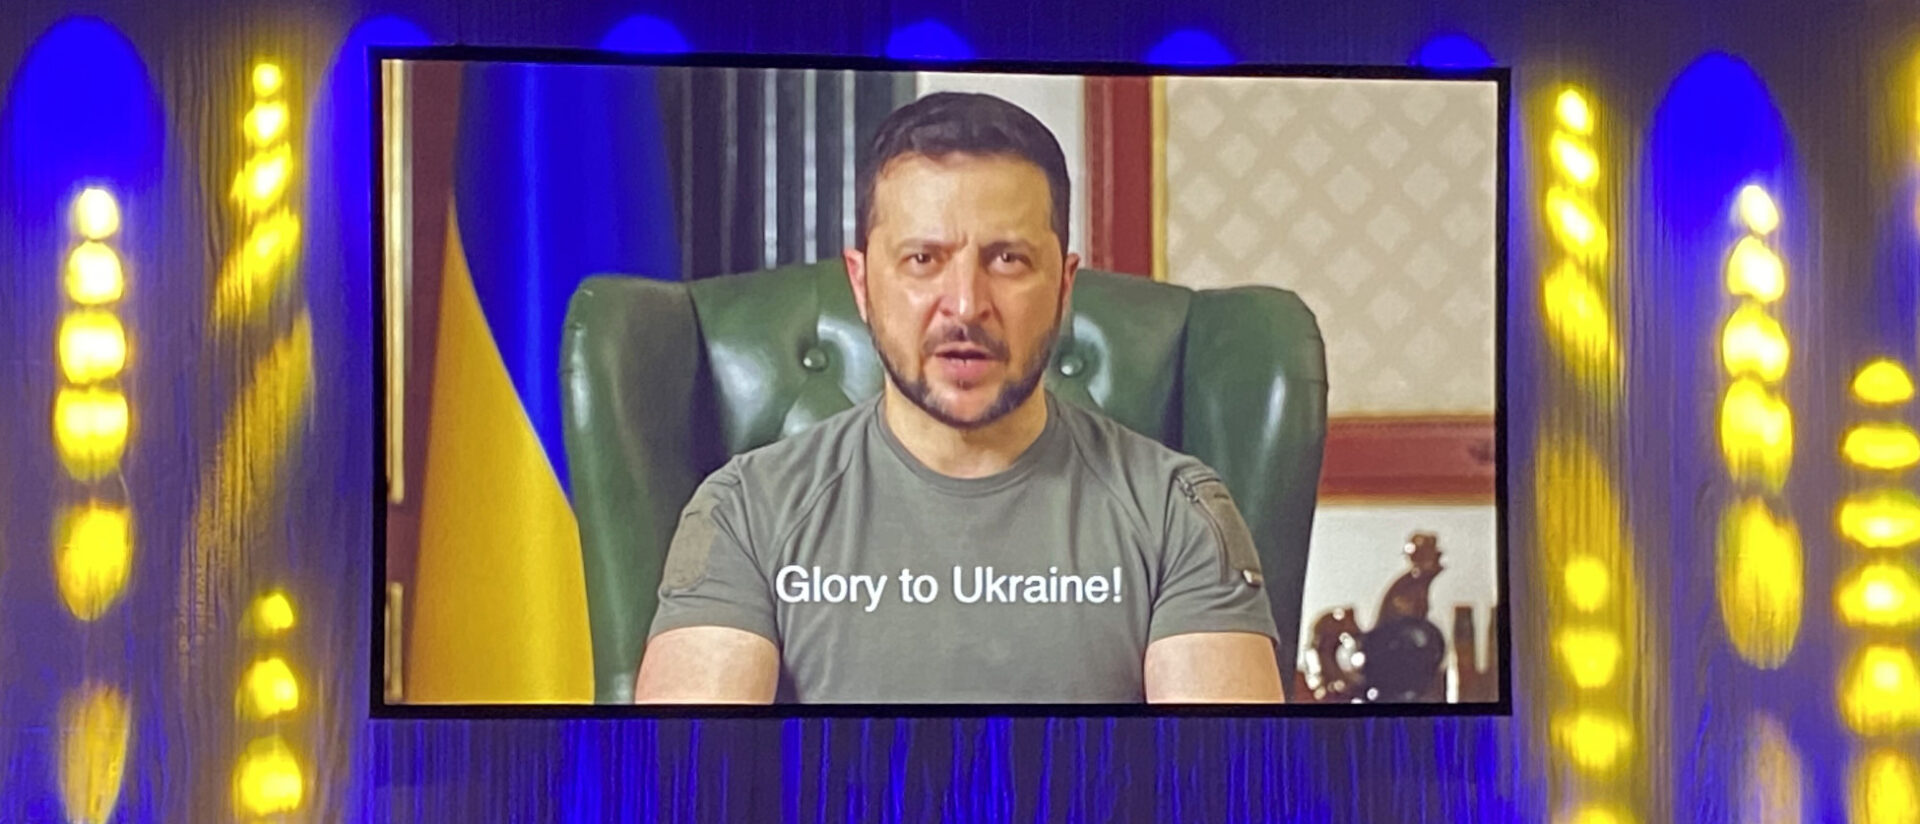 Wolodymyr Selenskyj, Staatspräsident der Ukraine, in einer Video-Botschaft.